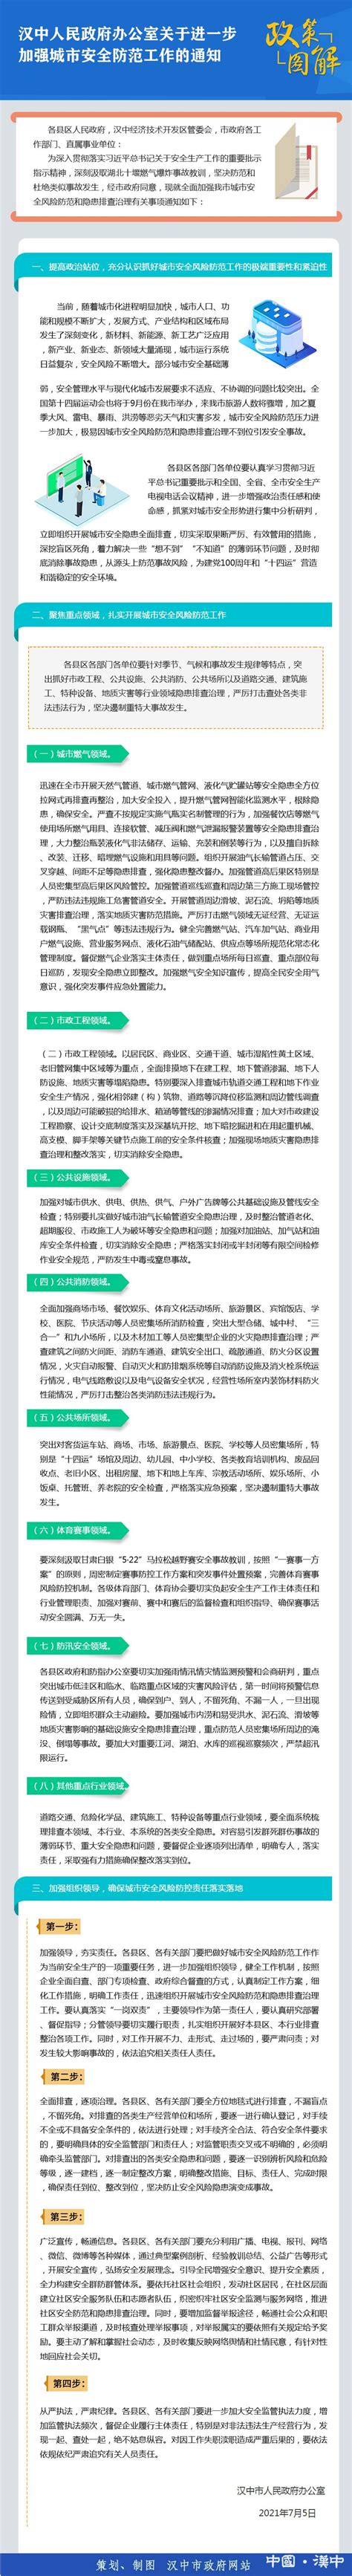 图解：汉中人民政府办公室关于进一步加强城市安全防范工作的通知 - 图文解读 - 汉中市人民政府